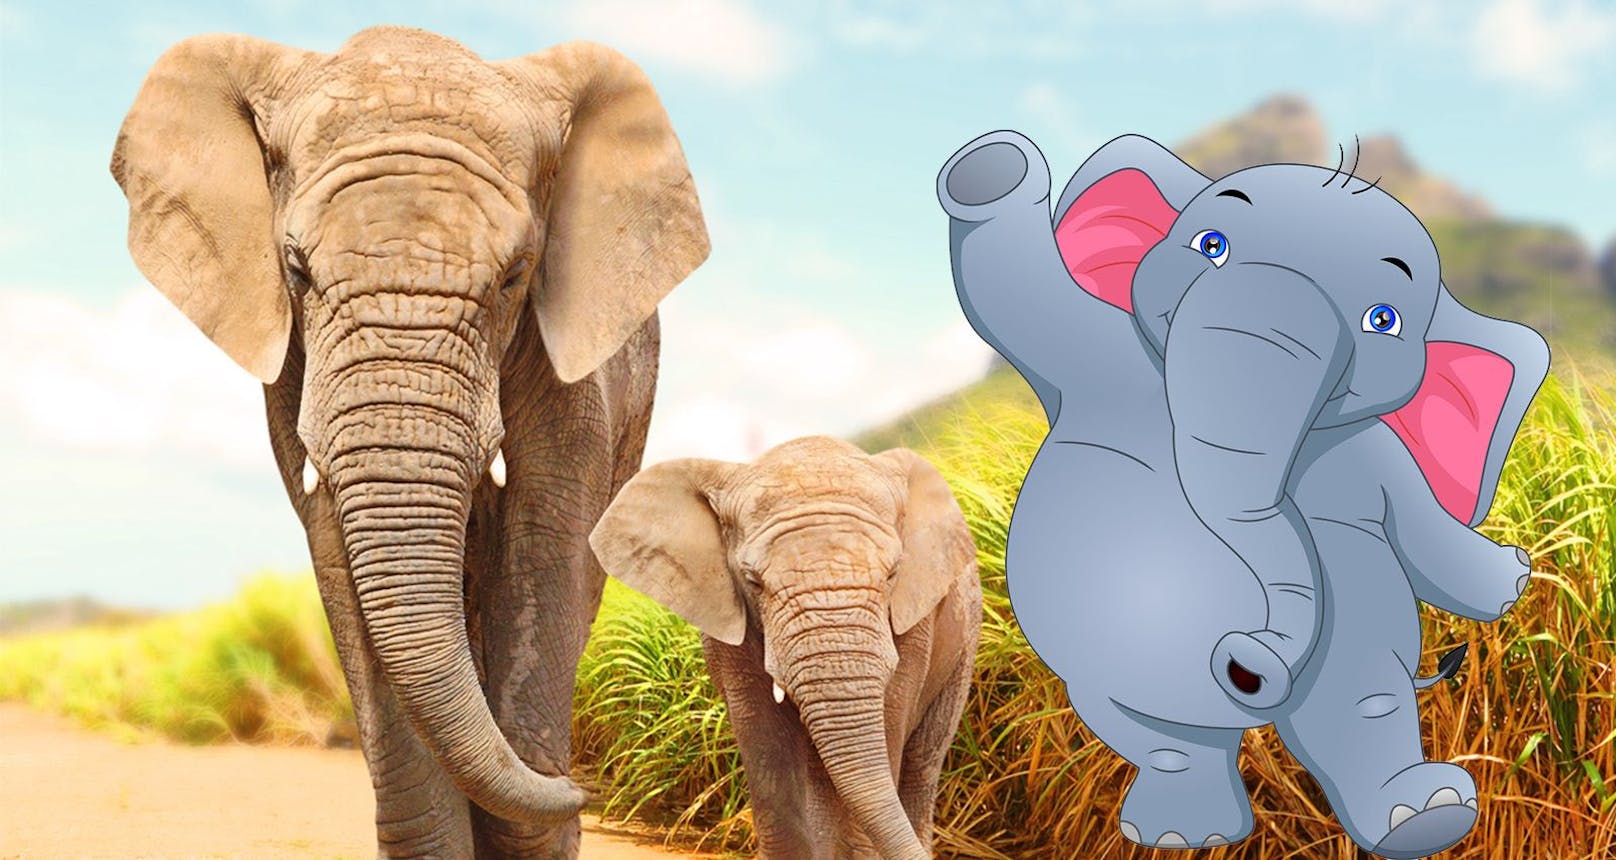 Törööö! "Heute" kürt die schönste Elefanten-Zeichnung